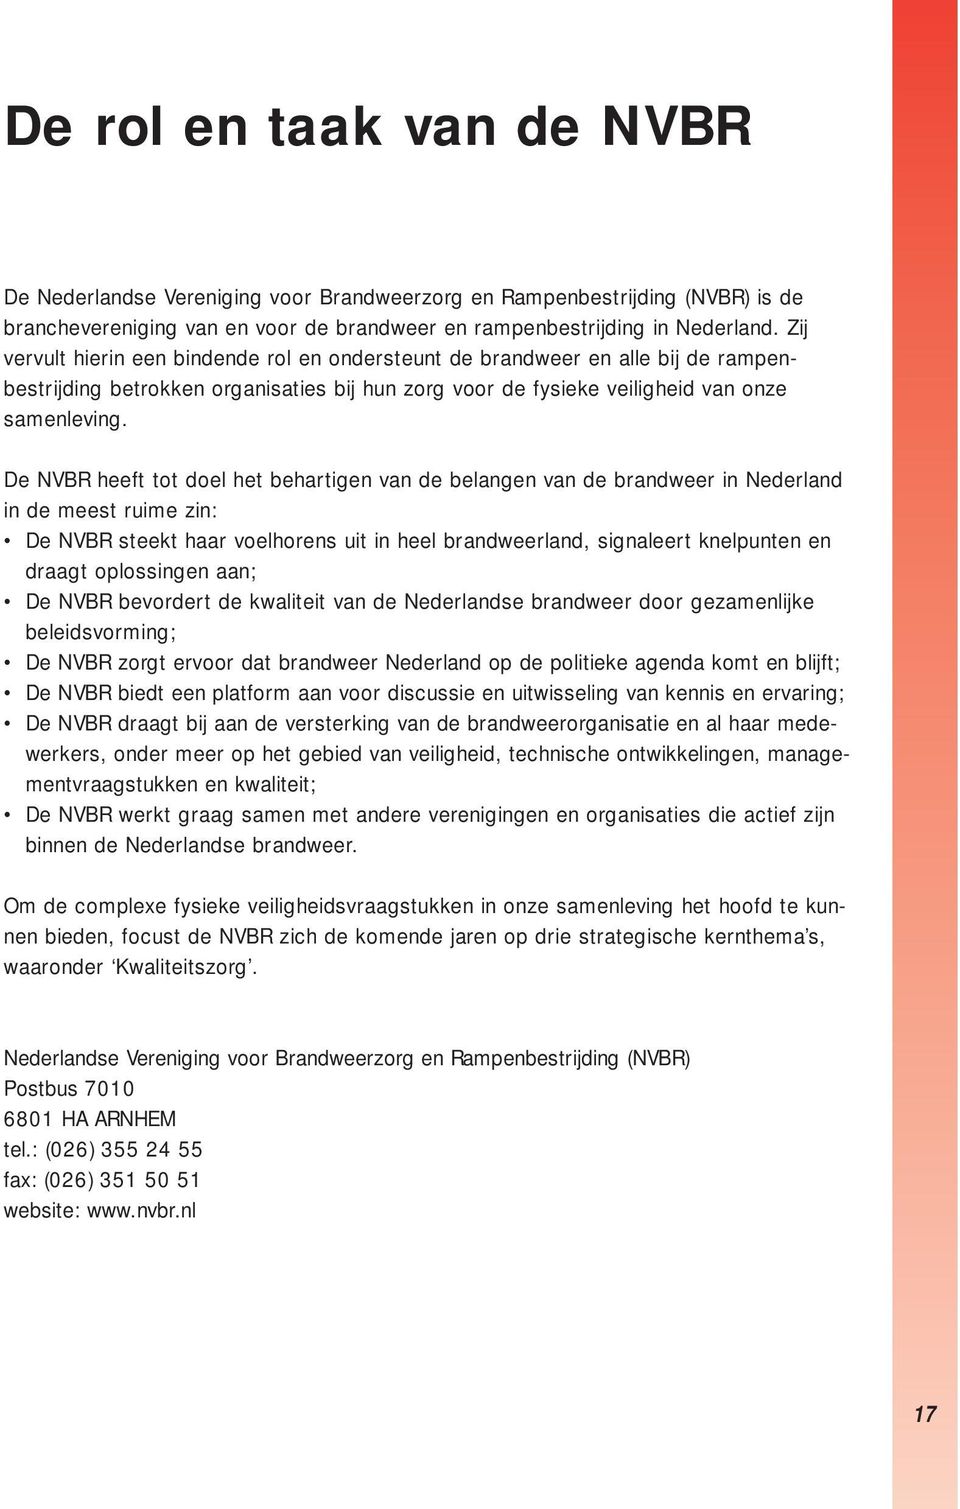 De NVBR heeft tot doel het behartigen van de belangen van de brandweer in Nederland in de meest ruime zin: De NVBR steekt haar voelhorens uit in heel brandweerland, signaleert knelpunten en draagt